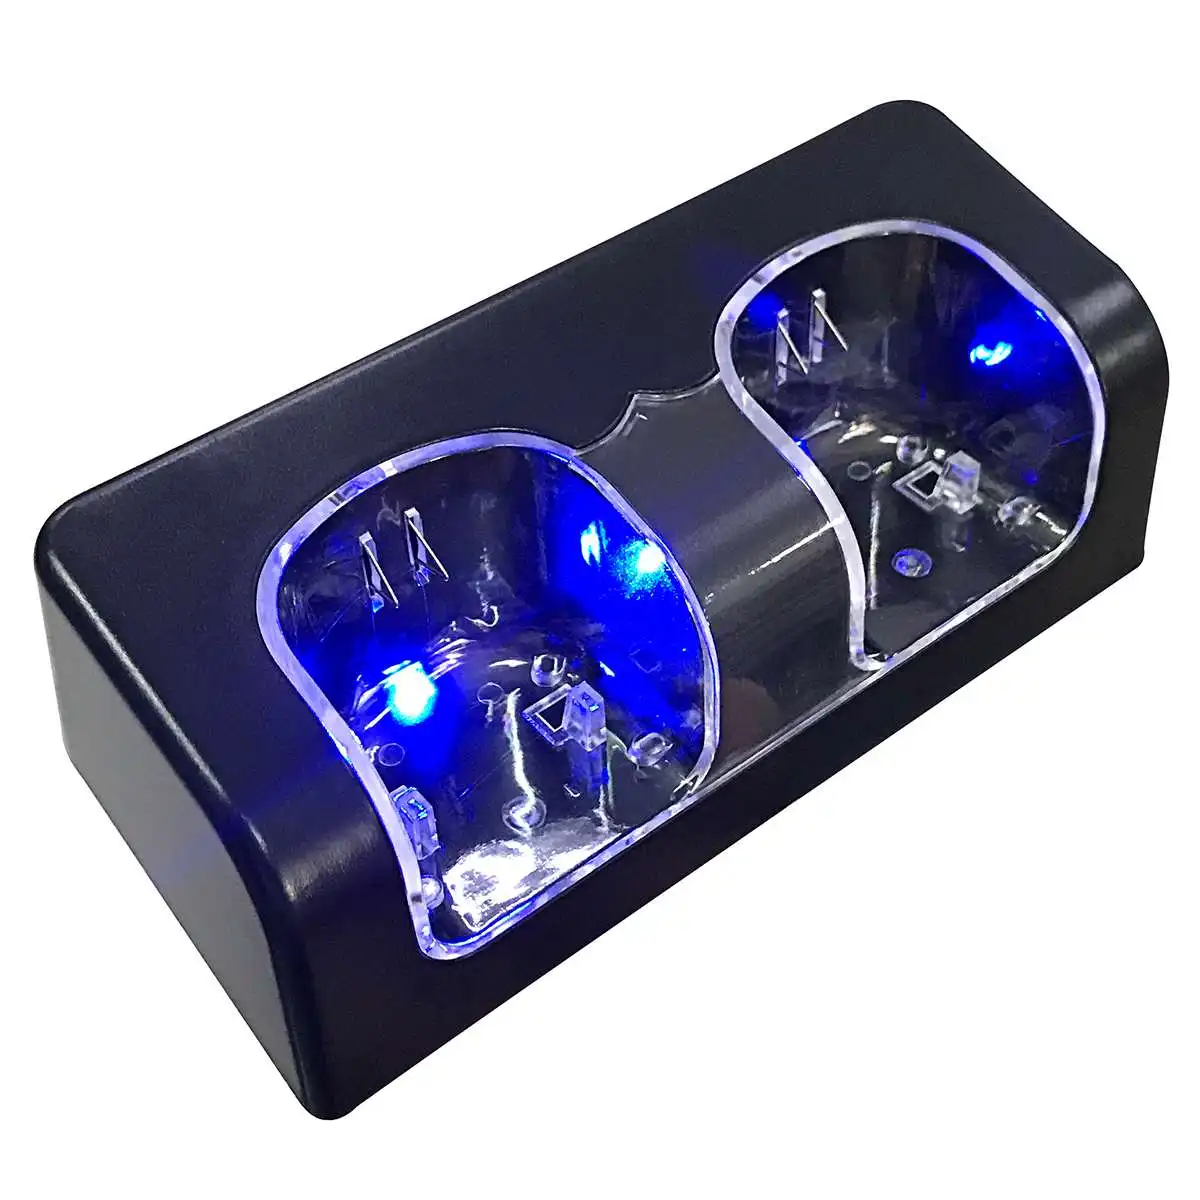 Использовать синий светодиодный светильник белый/черный пульт дистанционного управления Лер двойная зарядная док-станция+ 2X2800 мАч батарейный блок forWii пульт дистанционного управления